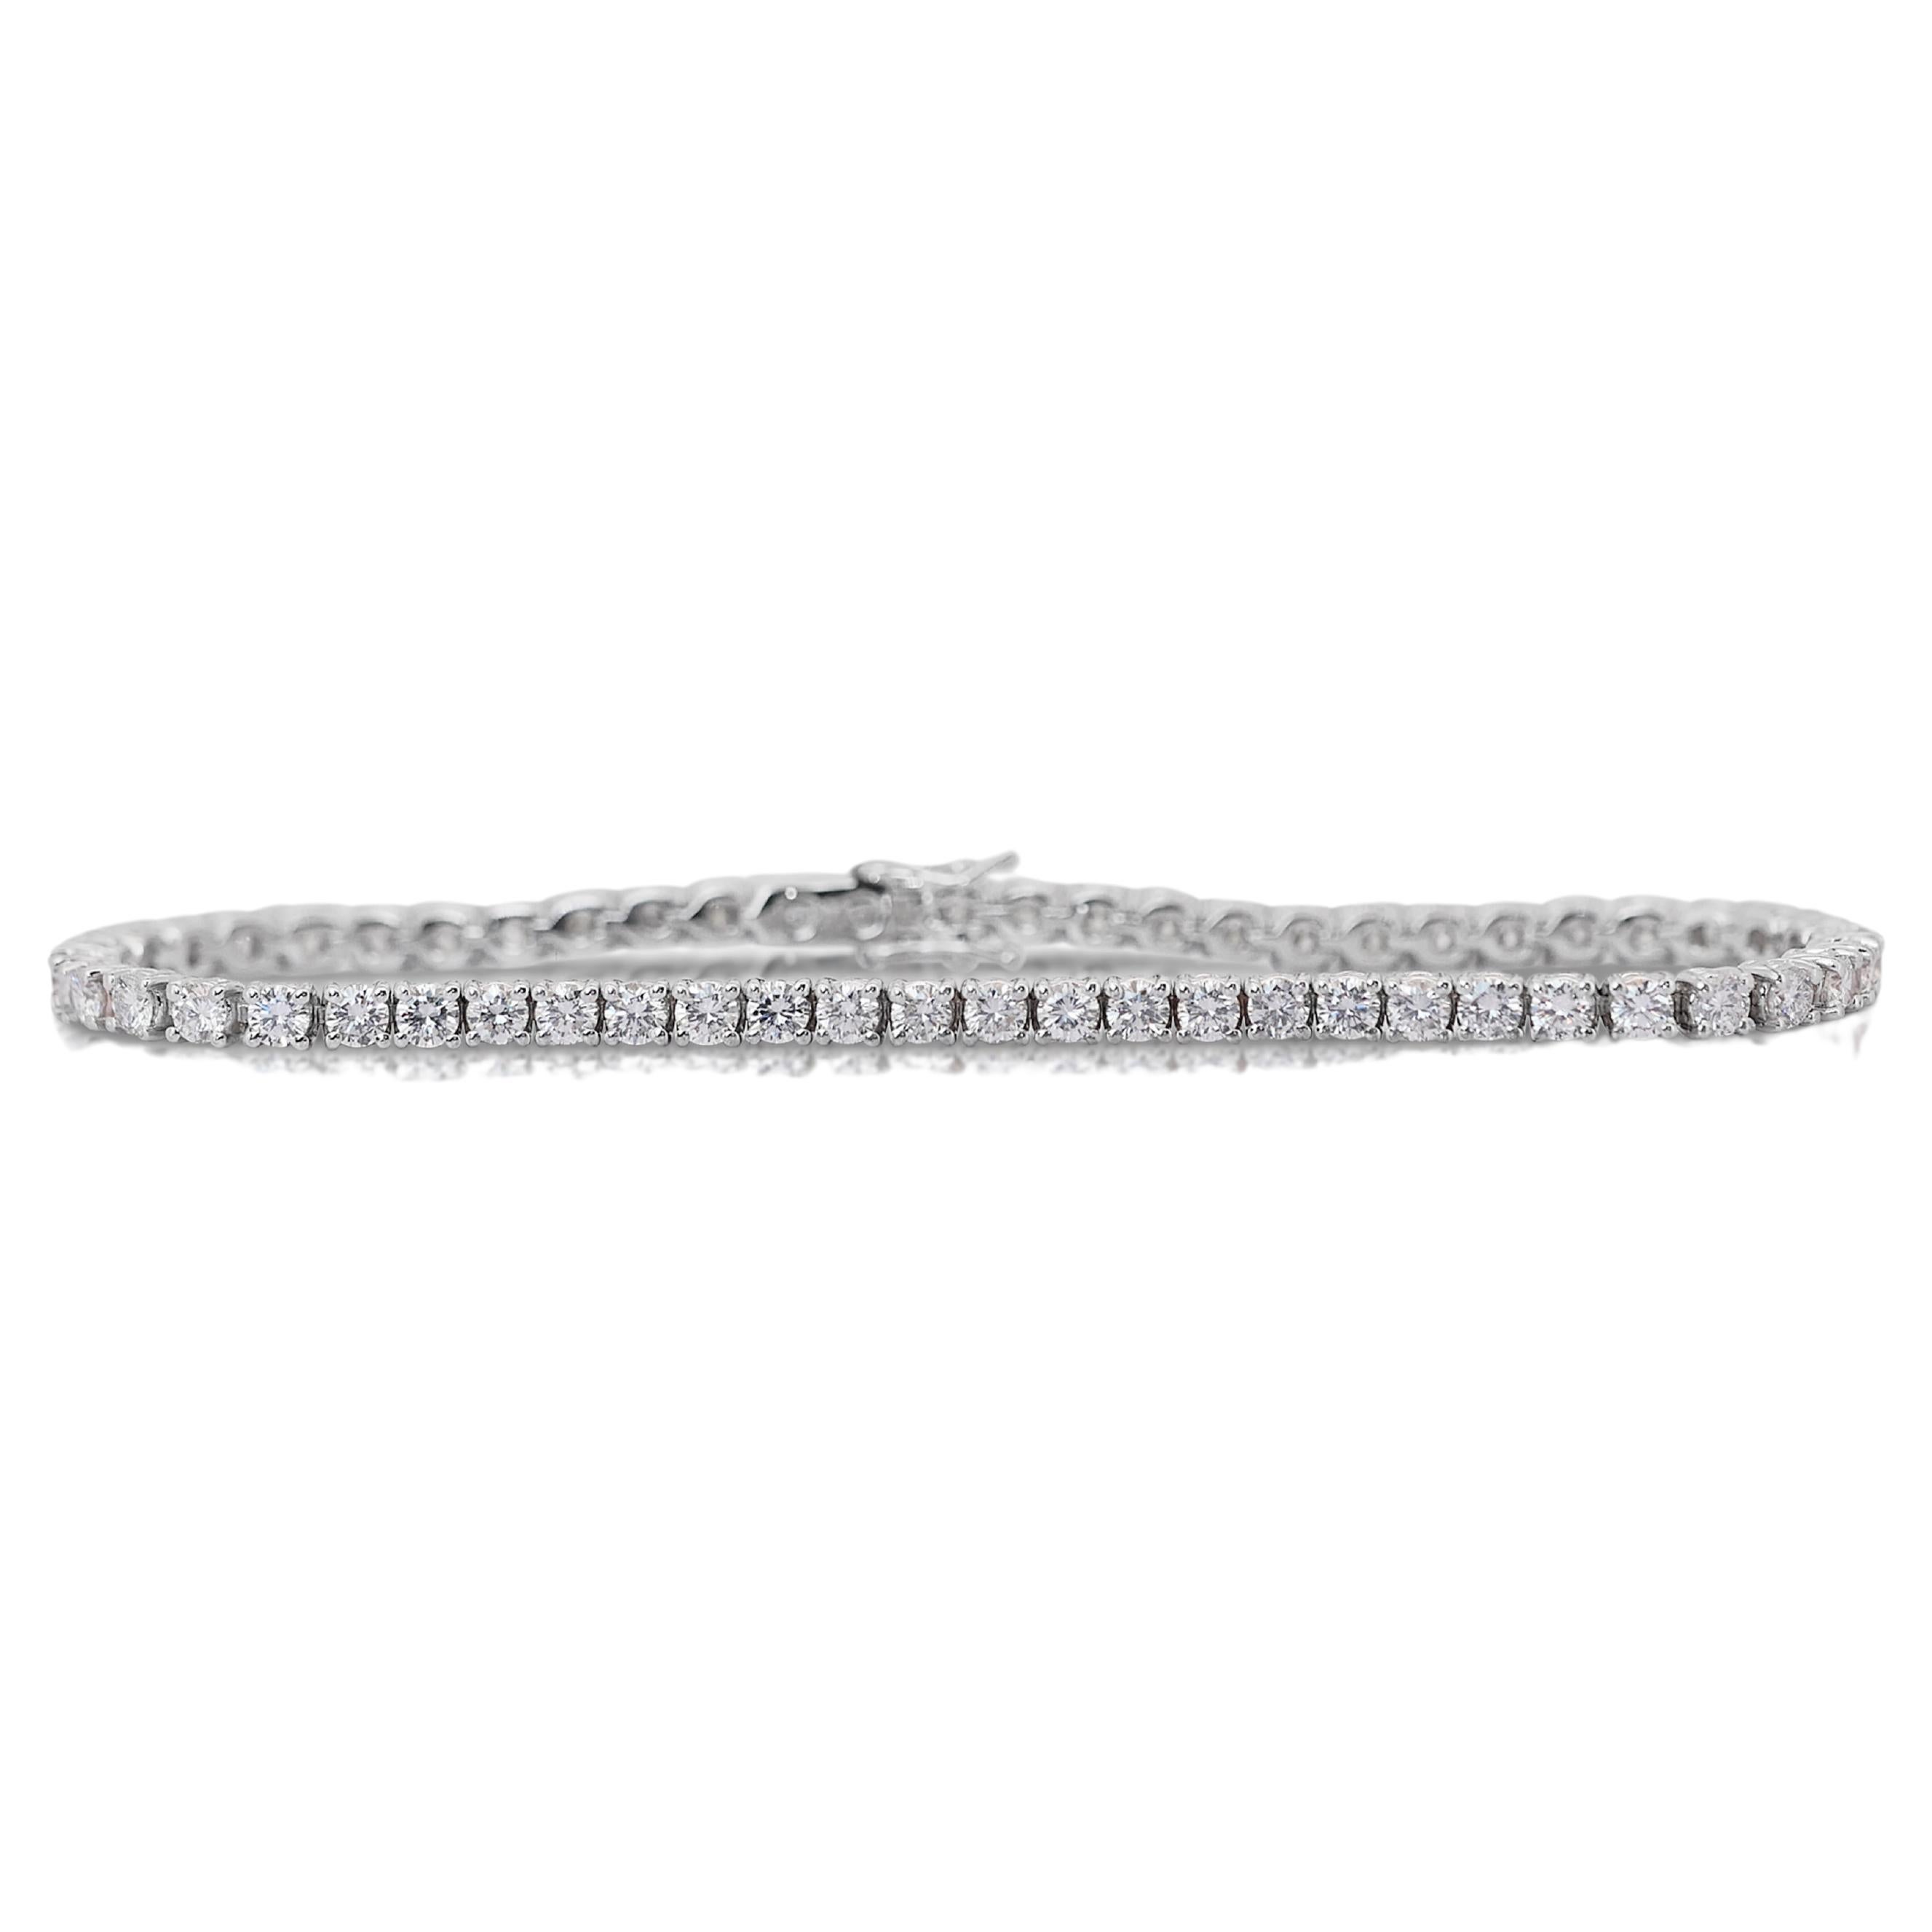 Radiant 5.32ct Diamonds Tennis Bracelet in 14k White Gold - IGI Certified For Sale